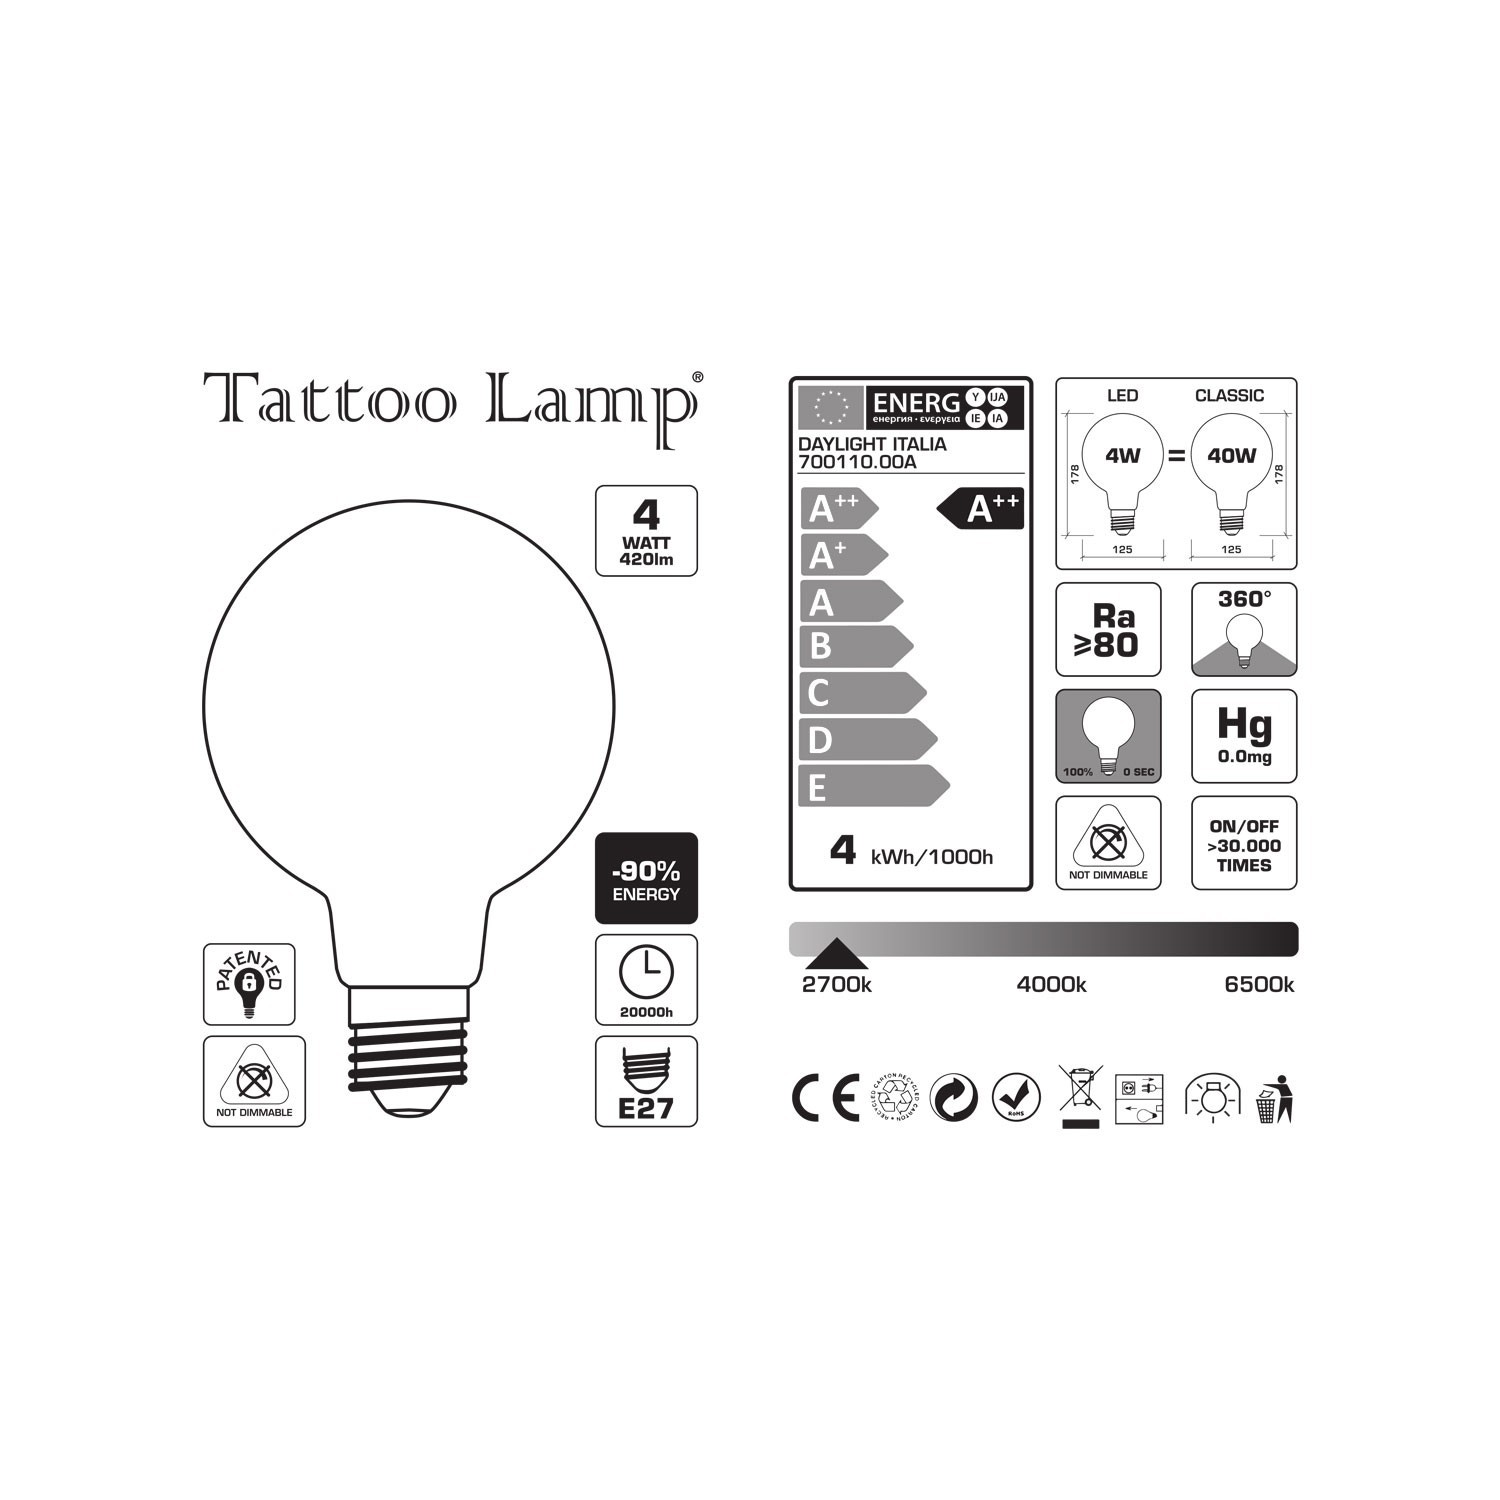 Bombilla LED Globo G125 Filamento Corto Linea Tattoo Lamp® Modelo Cuore 4W 420Lm E27 2700K